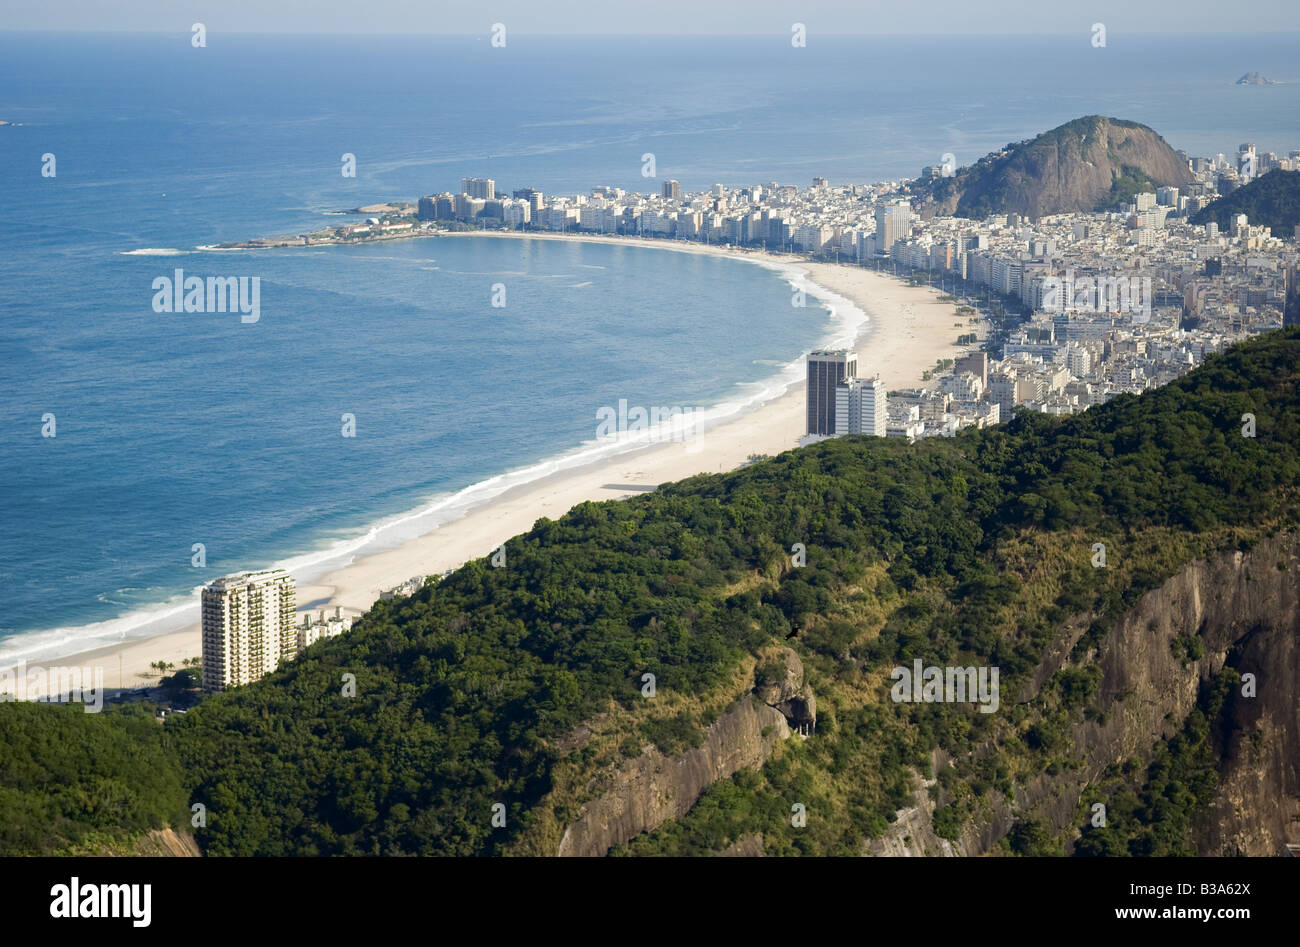 Vue aérienne de la plage de Copacabana, Rio de Janeiro, Brésil. Banque D'Images